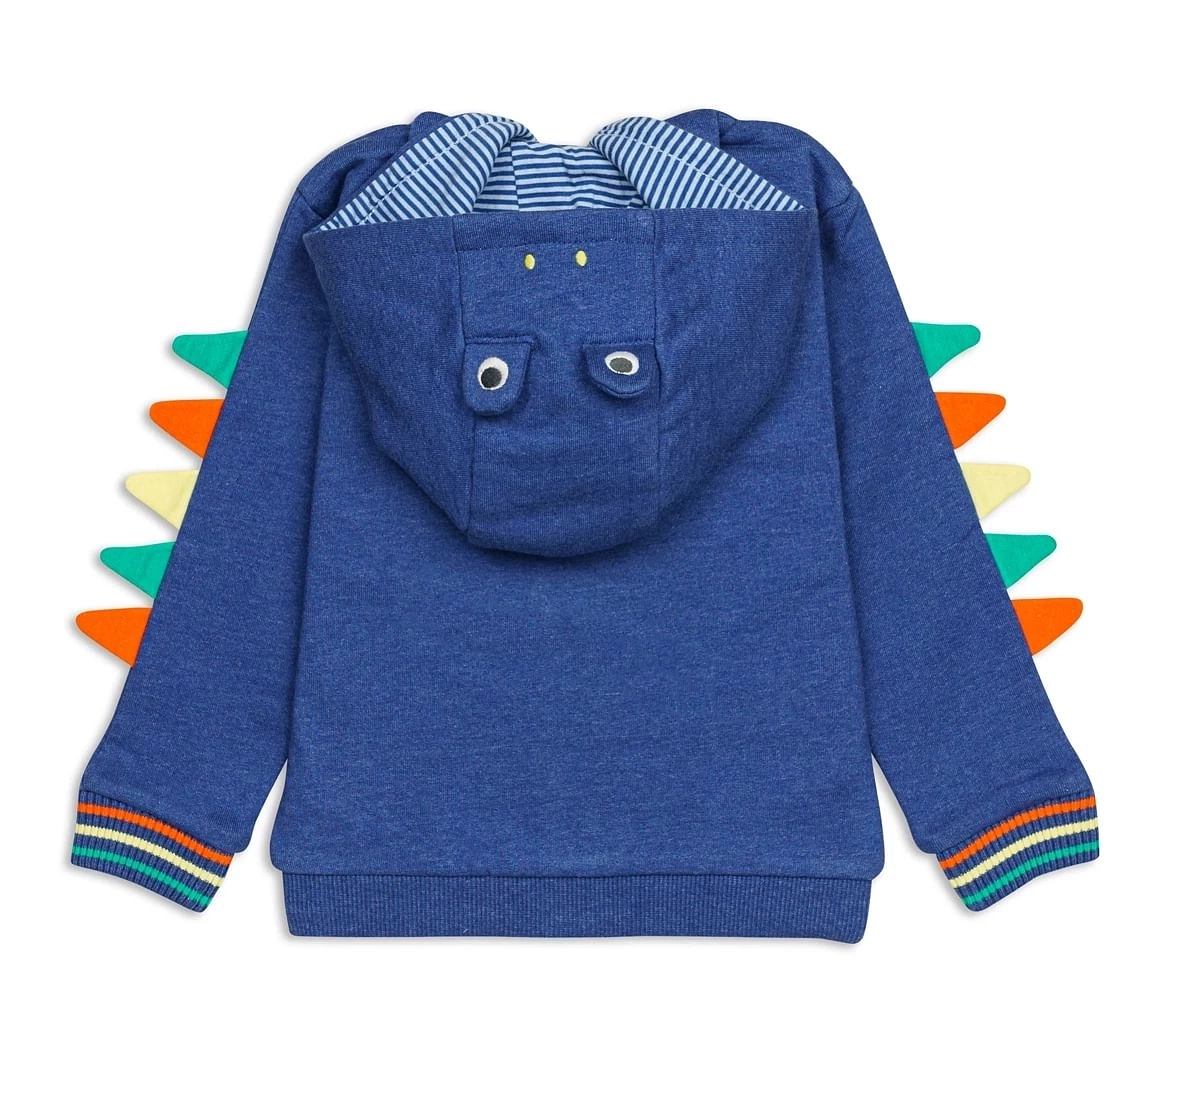 H by Hamleys Boys Full Sleeves sweatshirts -Pack of 1-Blue